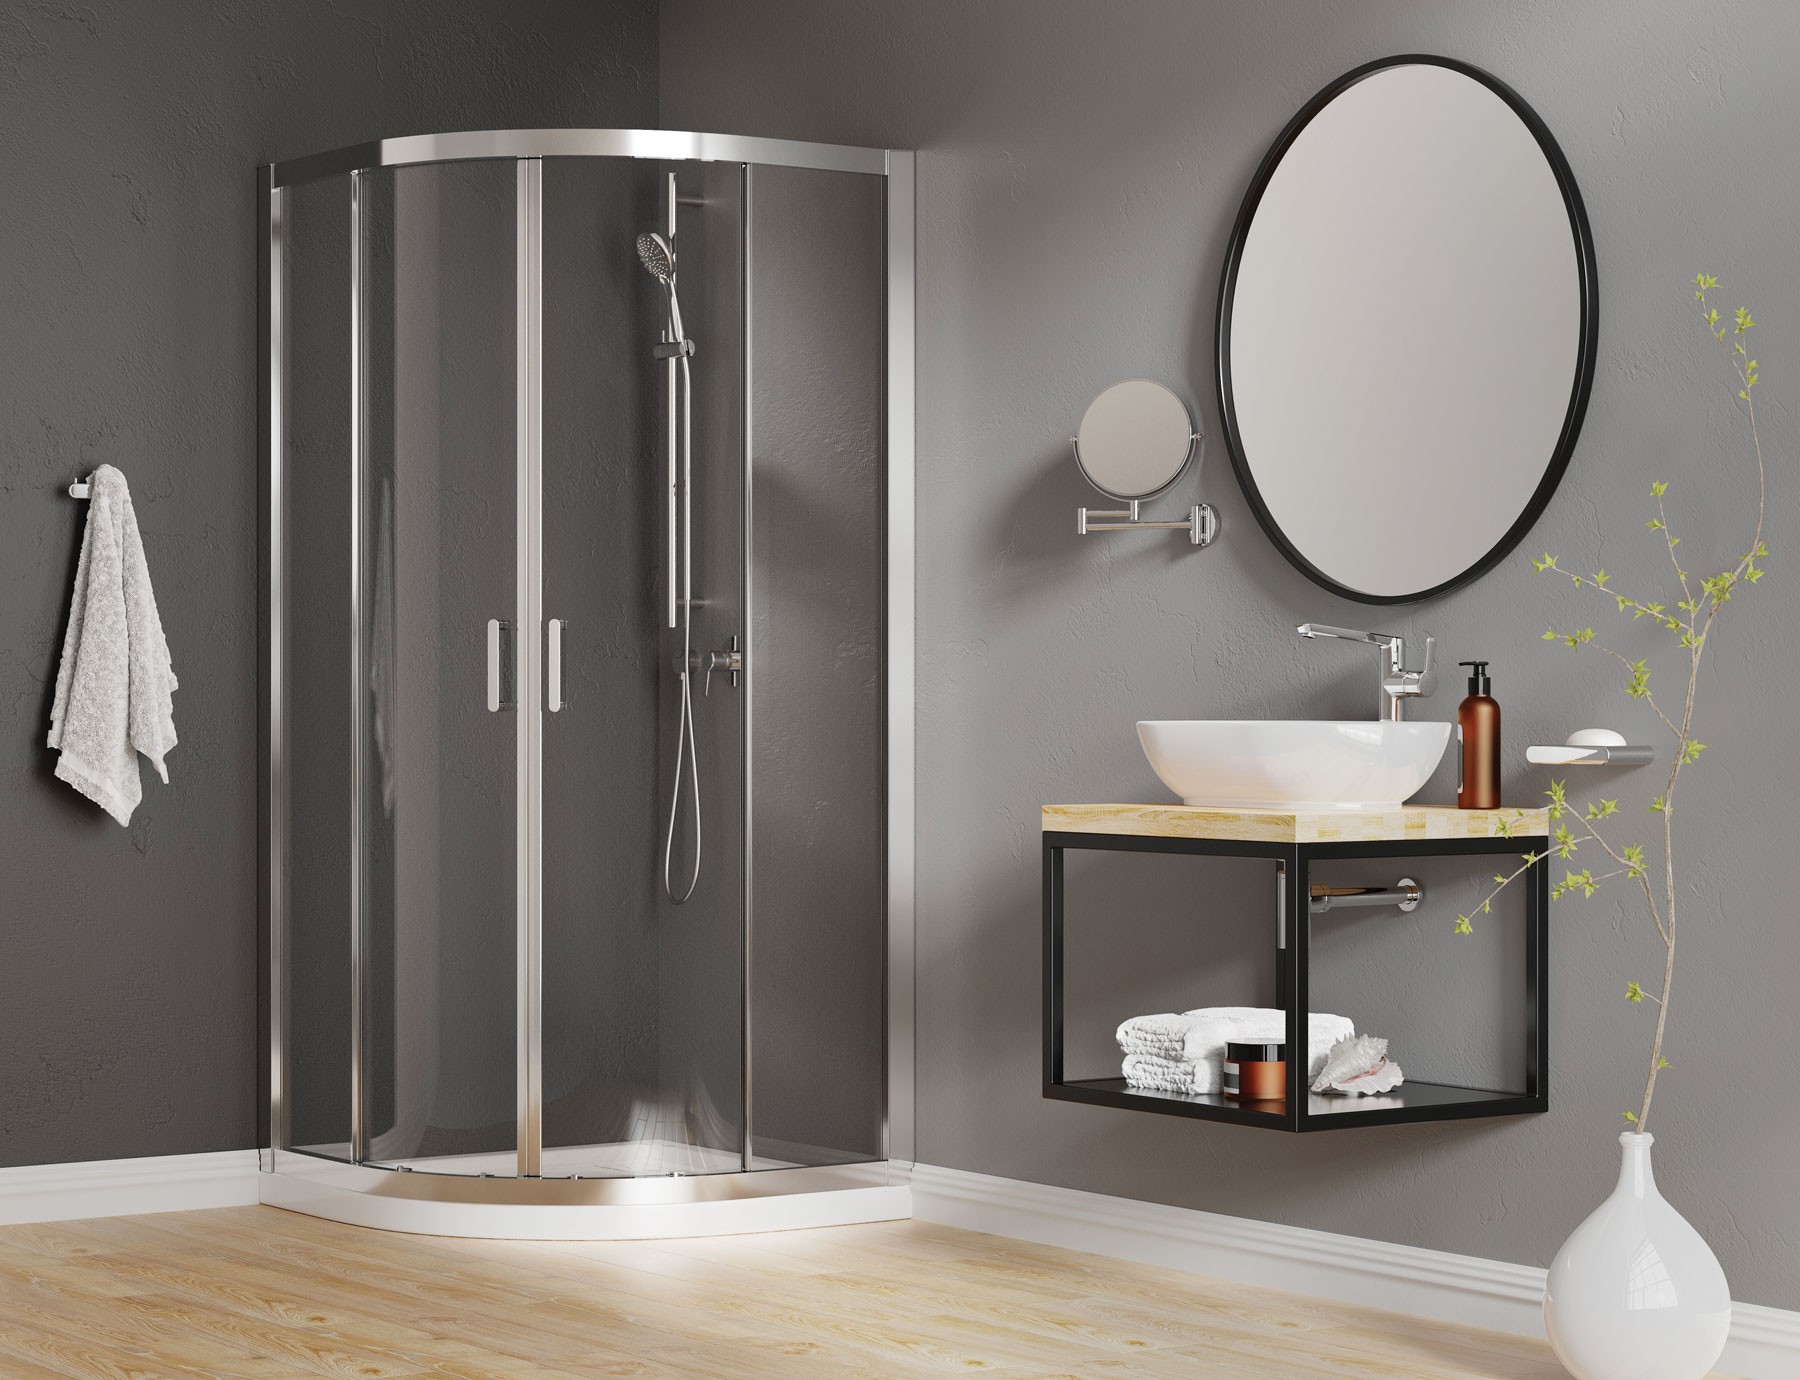 Łazienka z półokrągłą kabiną prysznicową, konsolą z umywalką nablatową, okrągłym lustrem w czarnej ramie i armaturą w kolorze chromu